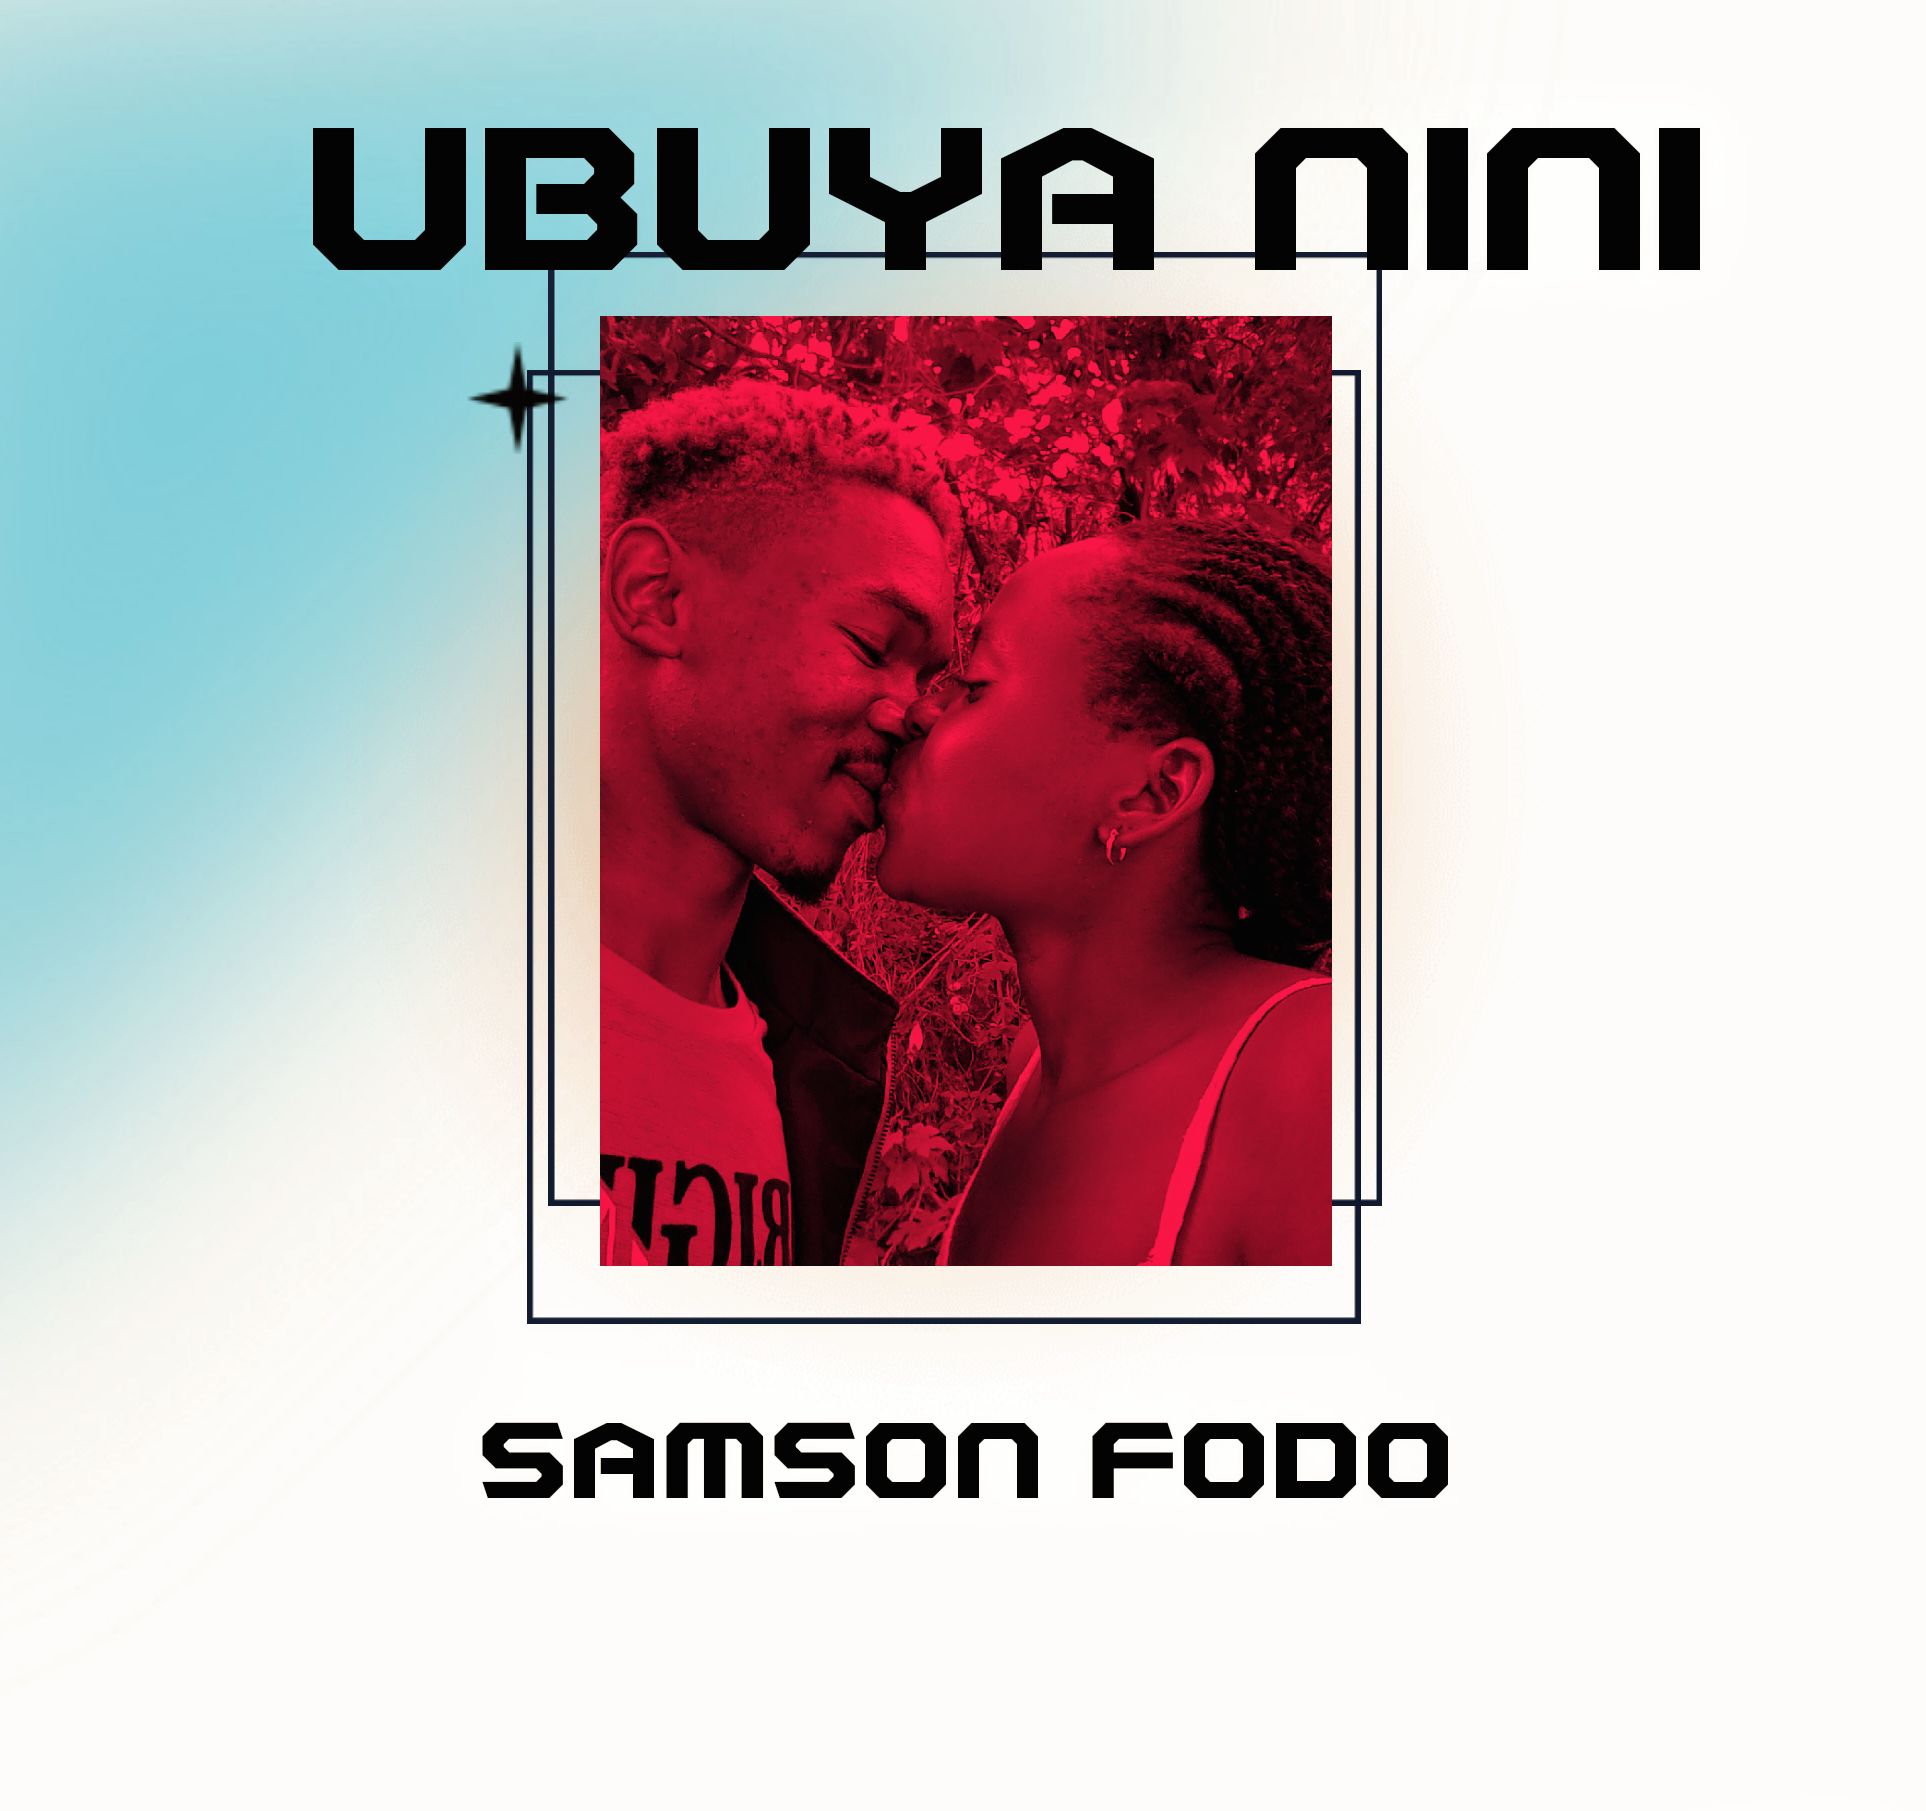 UBUYA NINI - SAMSON FODO